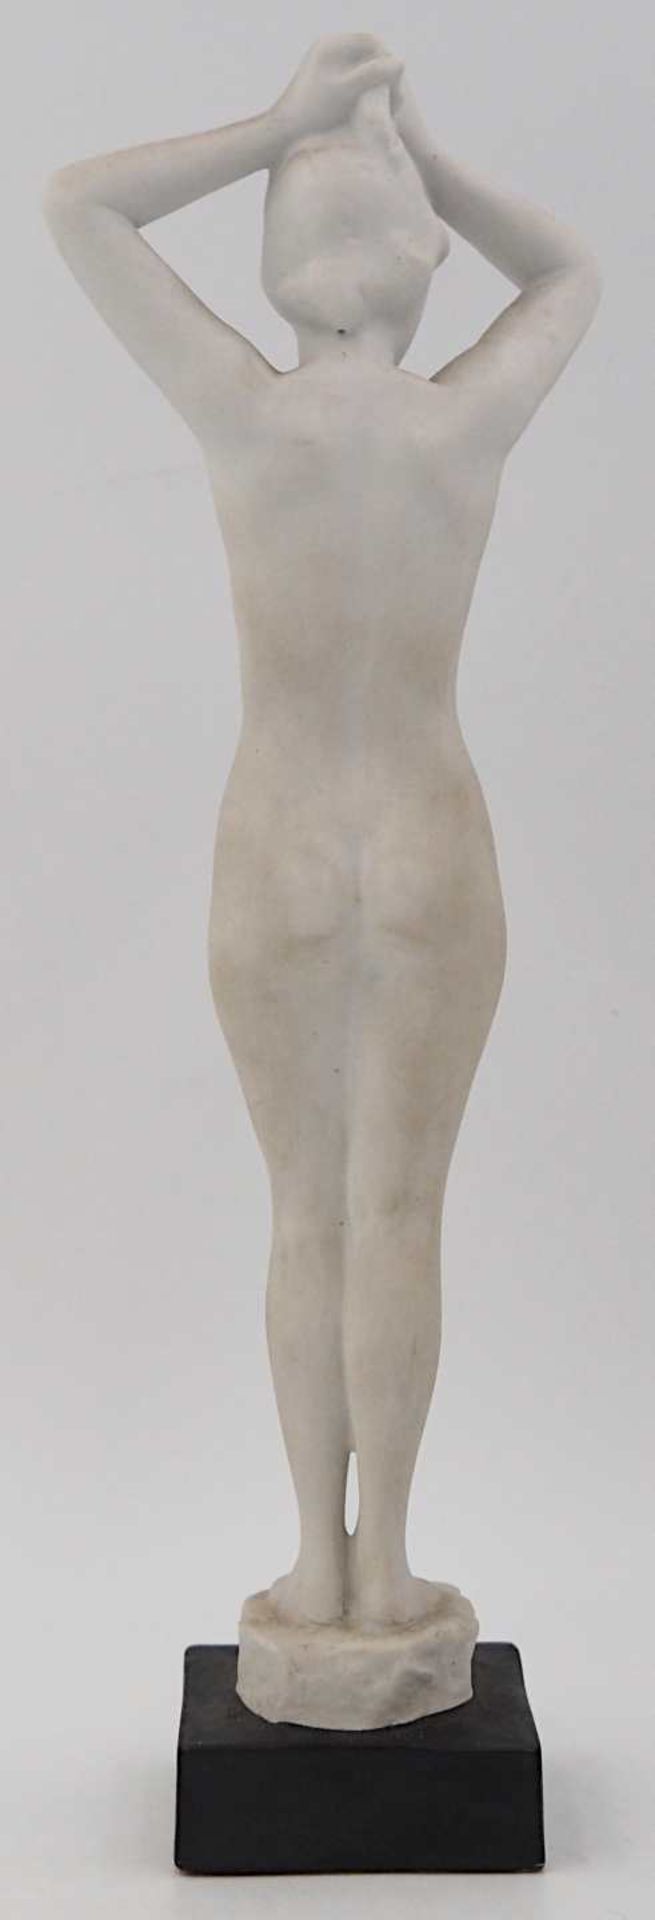 1 Figur Biskuitporzellan ROSENTHAL "Weiblicher Akt", Entwurf R. M. WERNER,wohl 1930er - Bild 5 aus 5